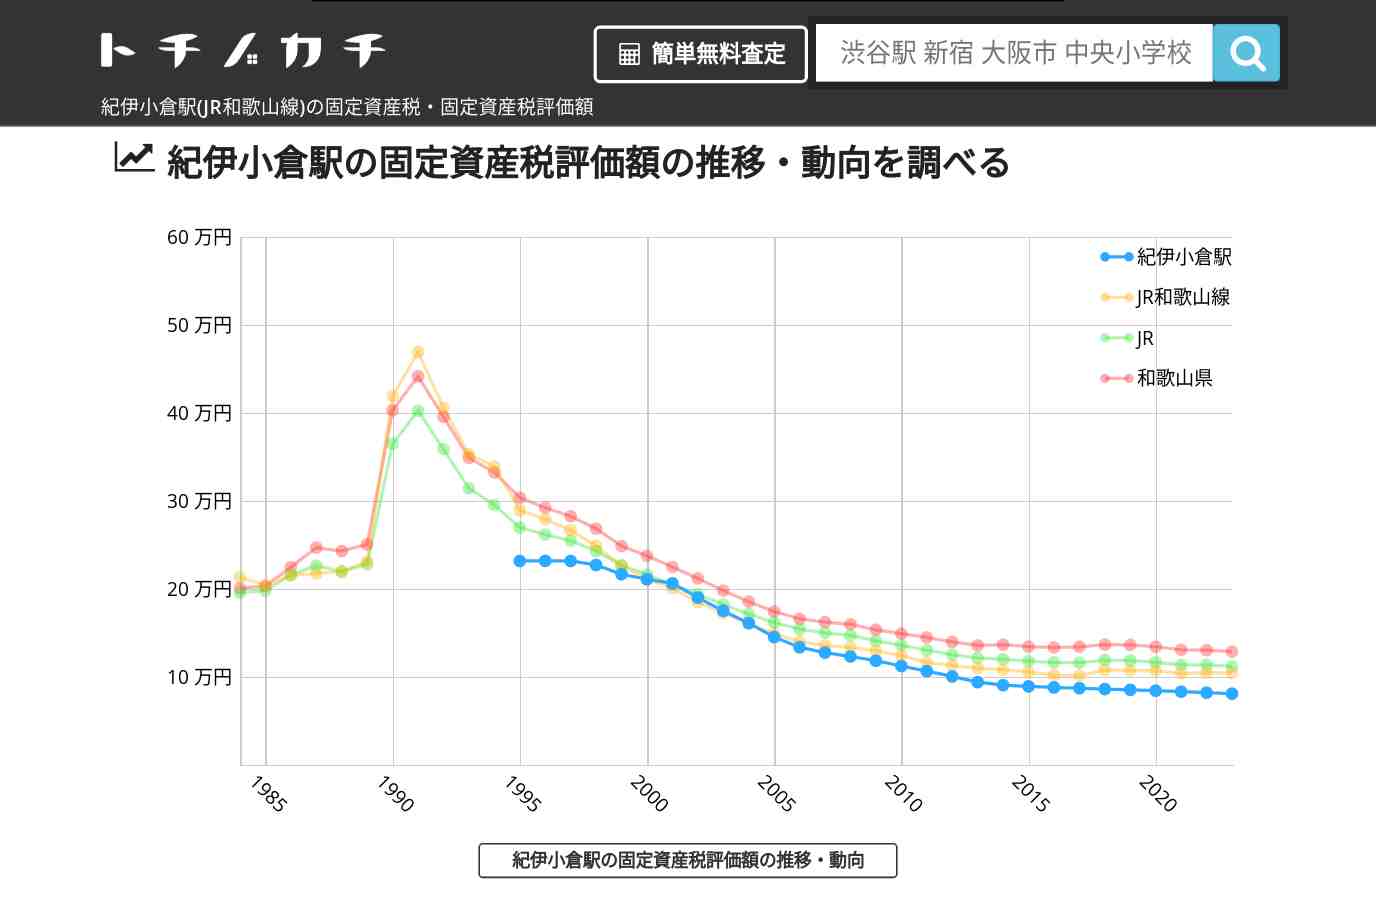 紀伊小倉駅(JR和歌山線)の固定資産税・固定資産税評価額 | トチノカチ